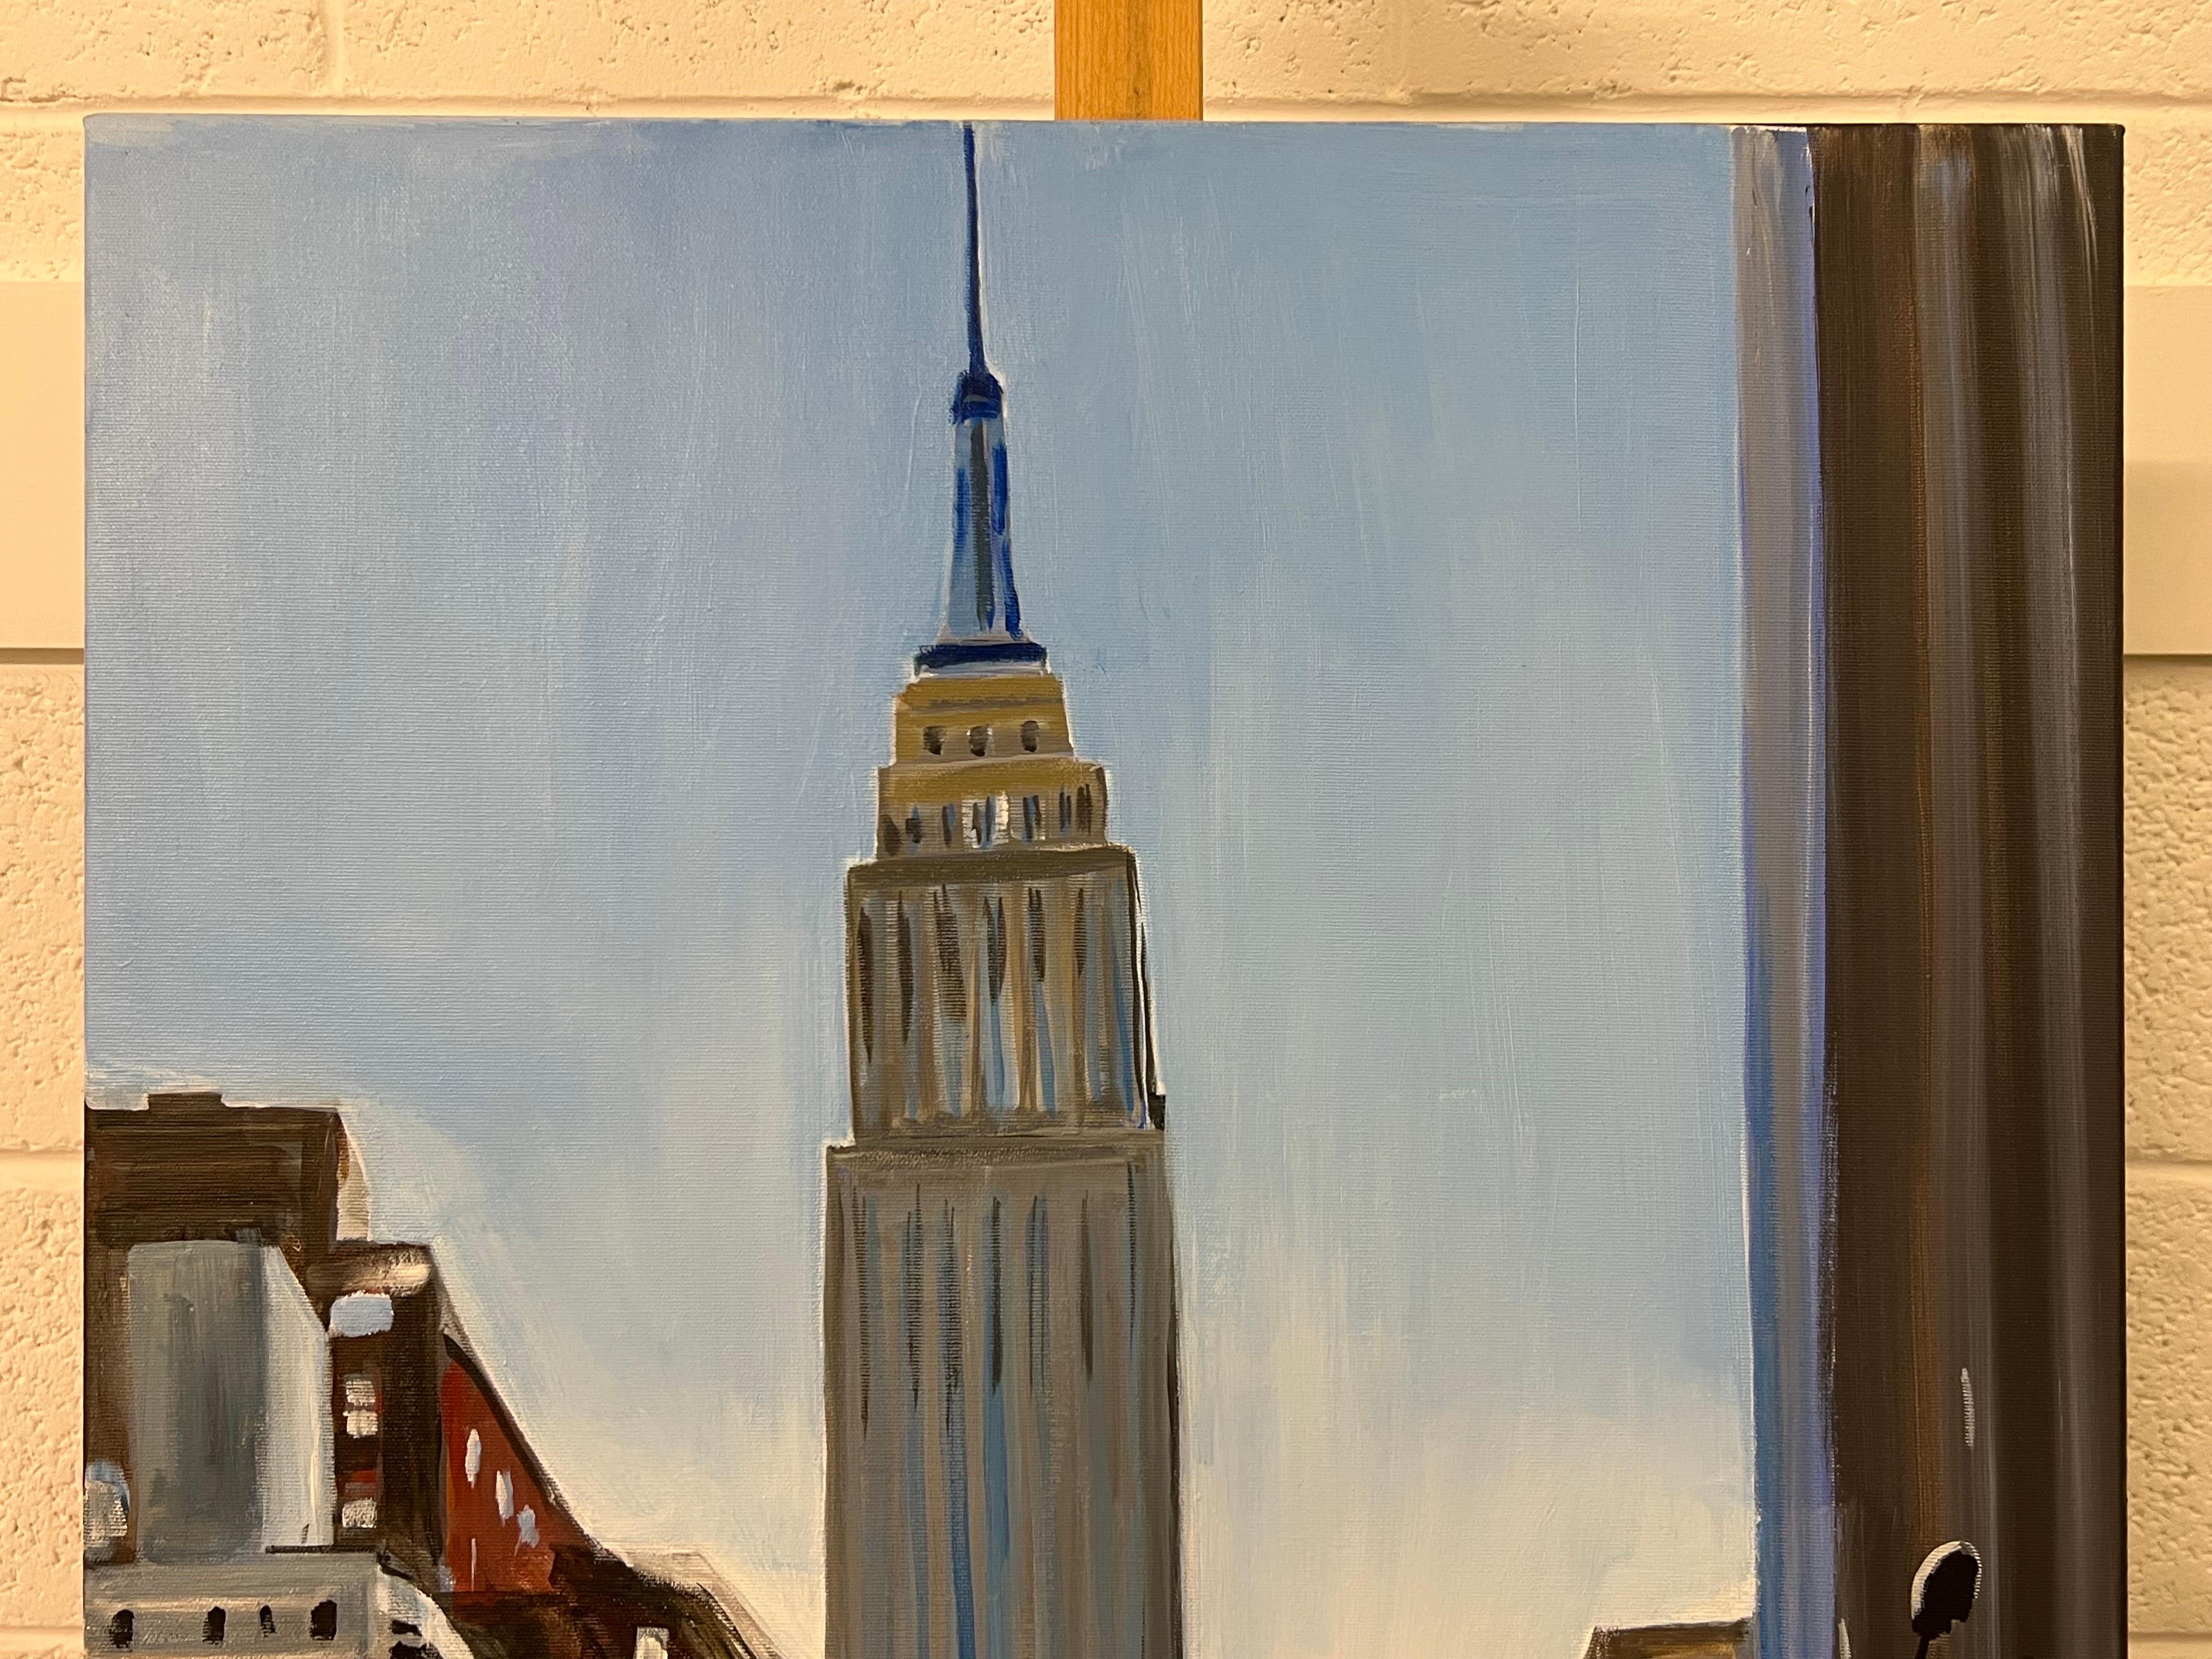 Empire State Building Sonnenuntergang in Manhattan New York City von der britischen Urban Artist, Angela Wakefield. Dies ist ein seltenes Frühwerk aus ihrer New Yorker Serie. 2011 wurde ein internationaler Artikel auf der Titelseite veröffentlicht.